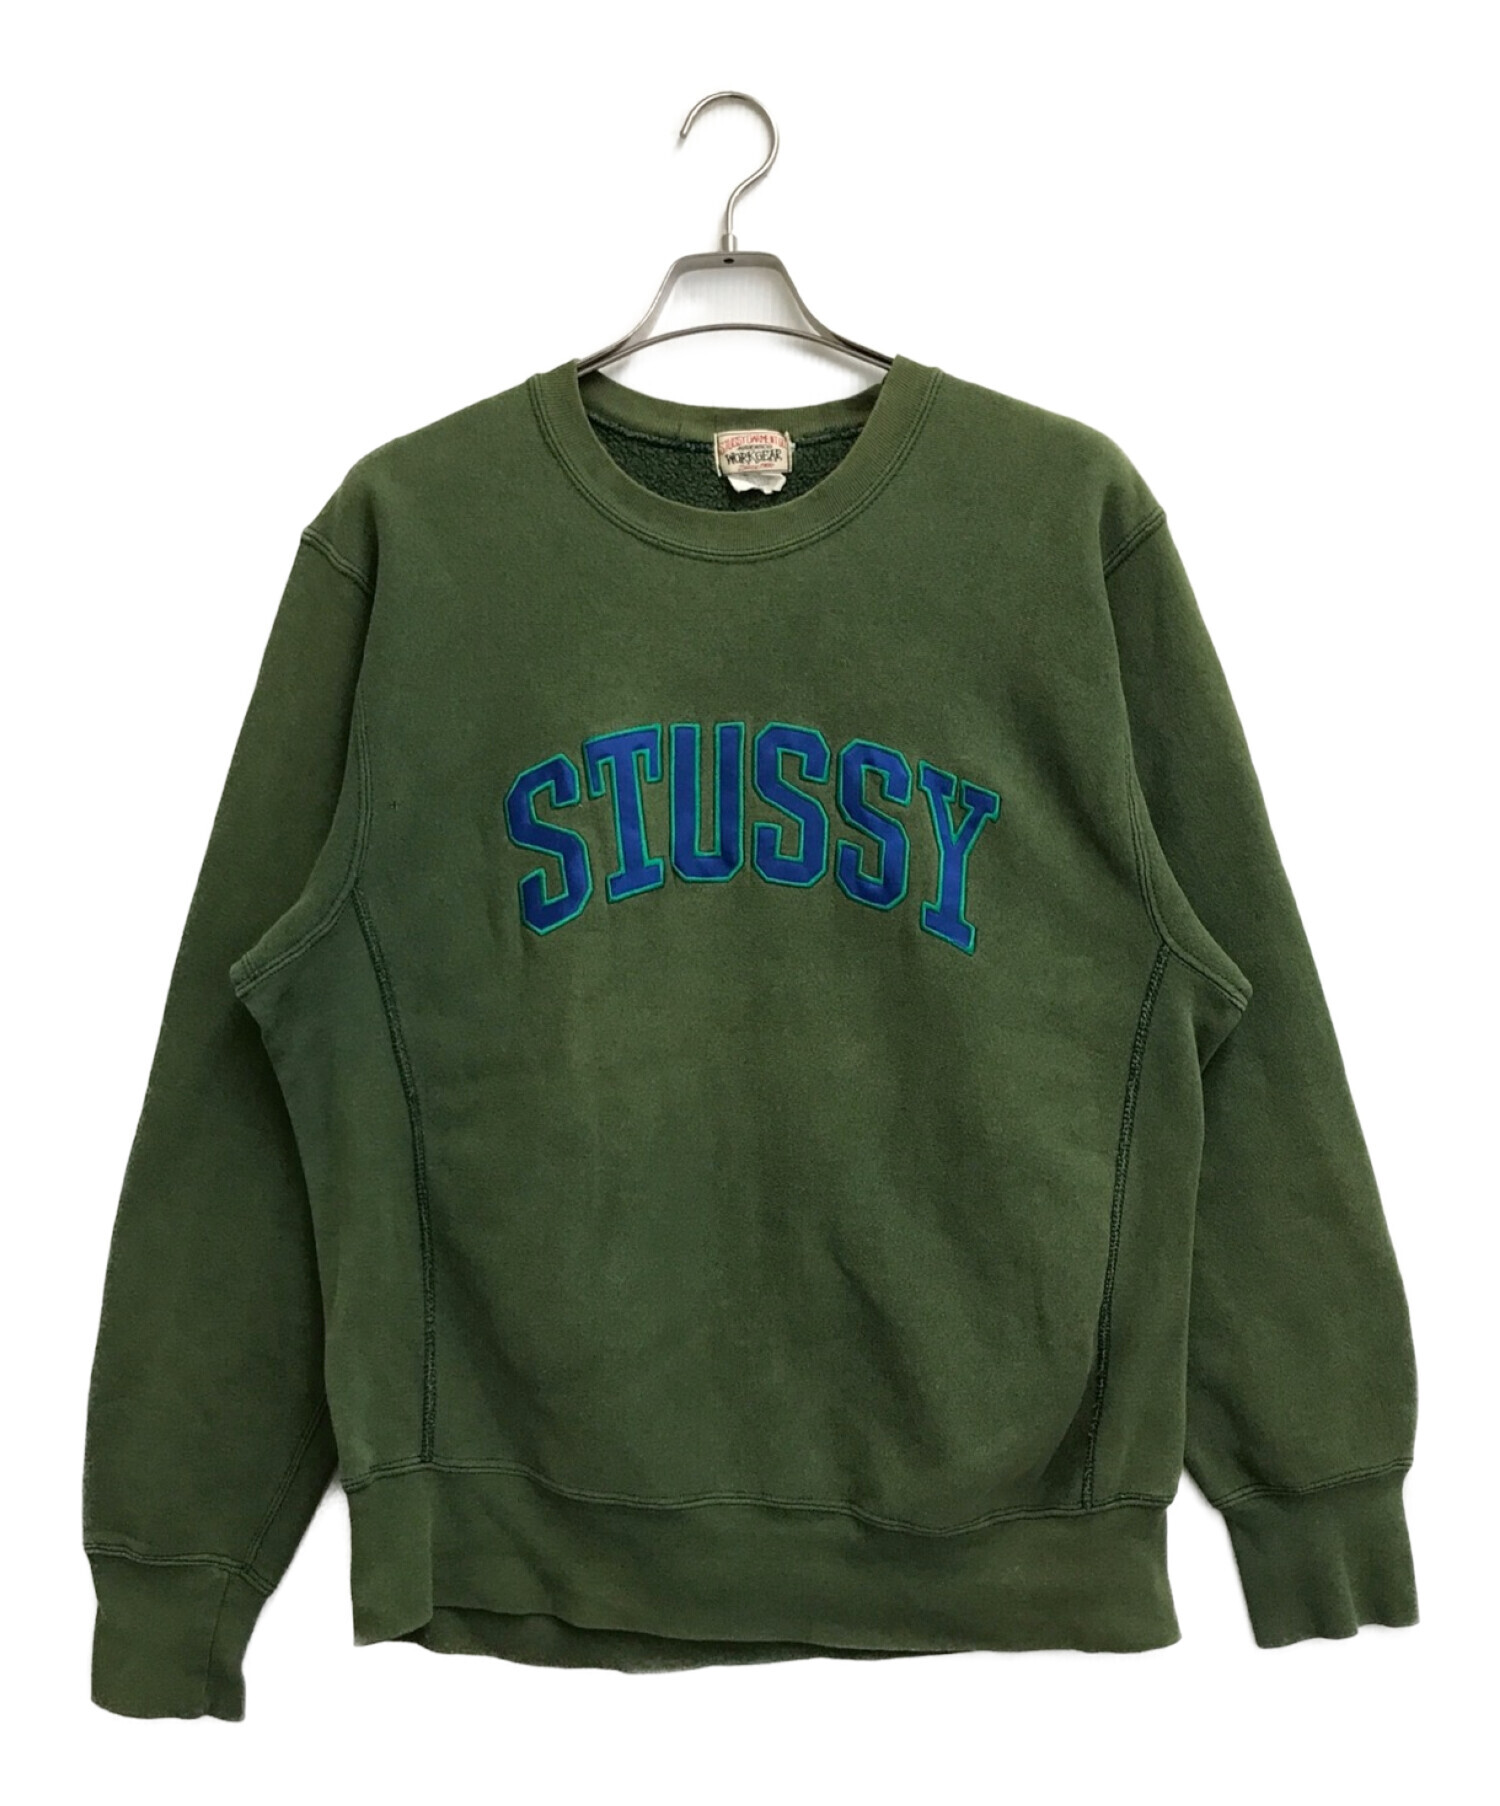 stussy (ステューシー) 90'sヴィンテージスウェット グリーン サイズ:M